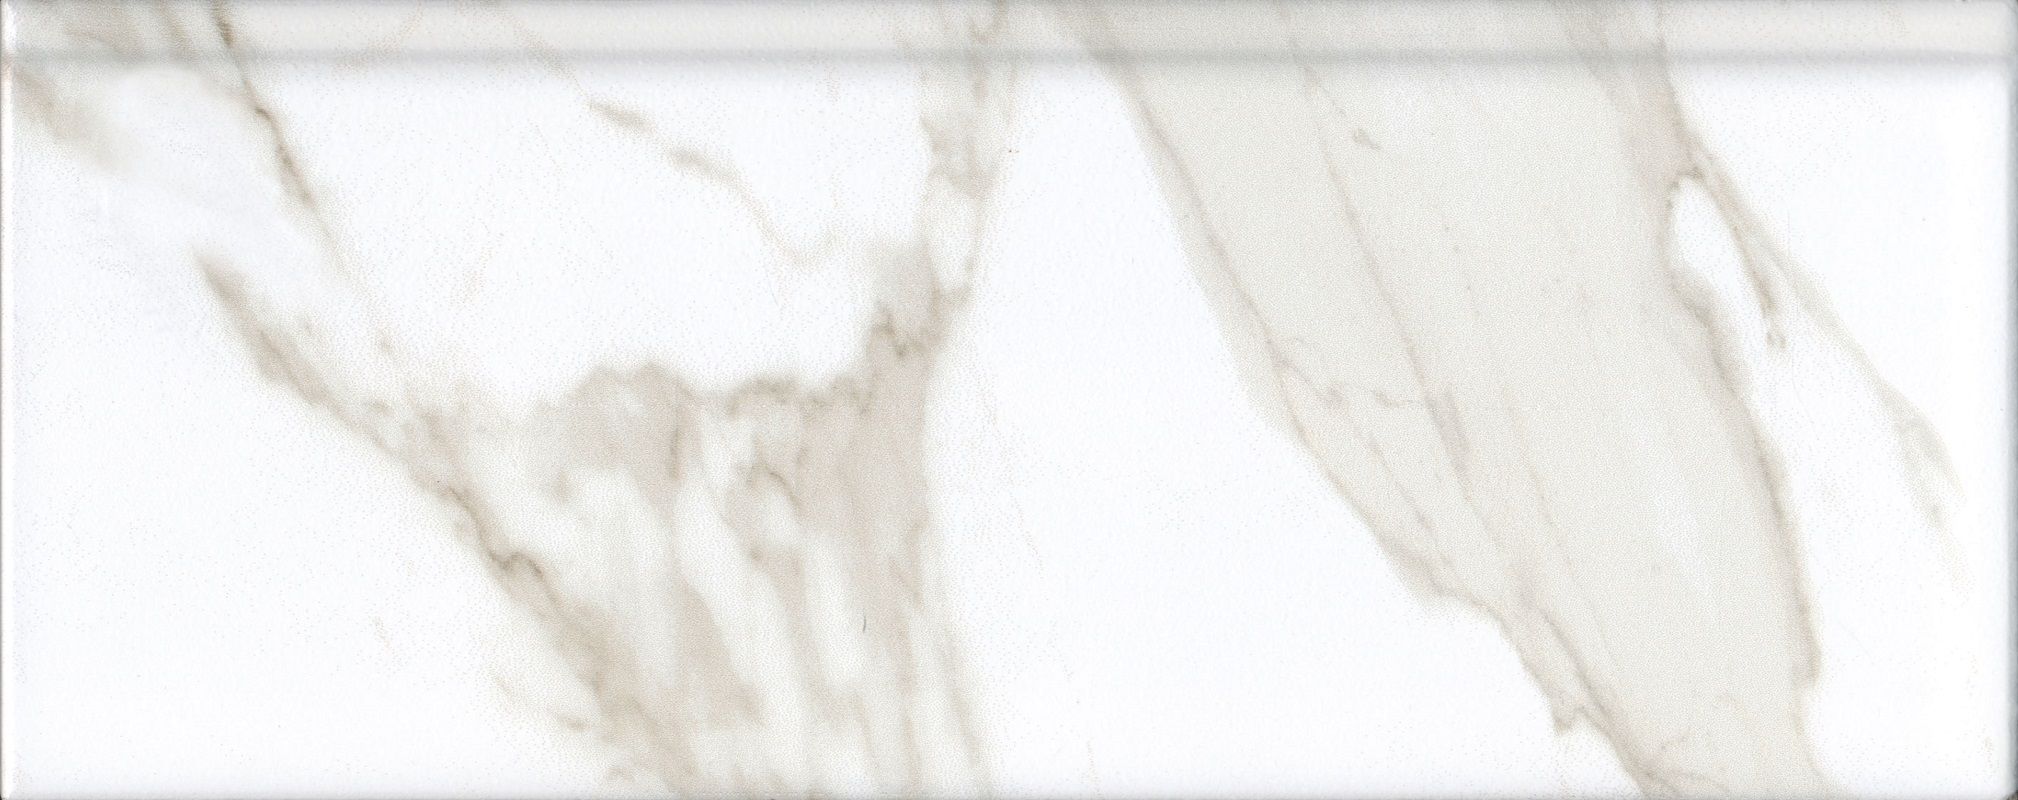 Плинтус керамический Kerama Marazzi Алентежу белый матовый обрезной 30x12 см, в упак 9 штук плитка bda025r бордюр серенада белый глянцевый обрезной 30x12